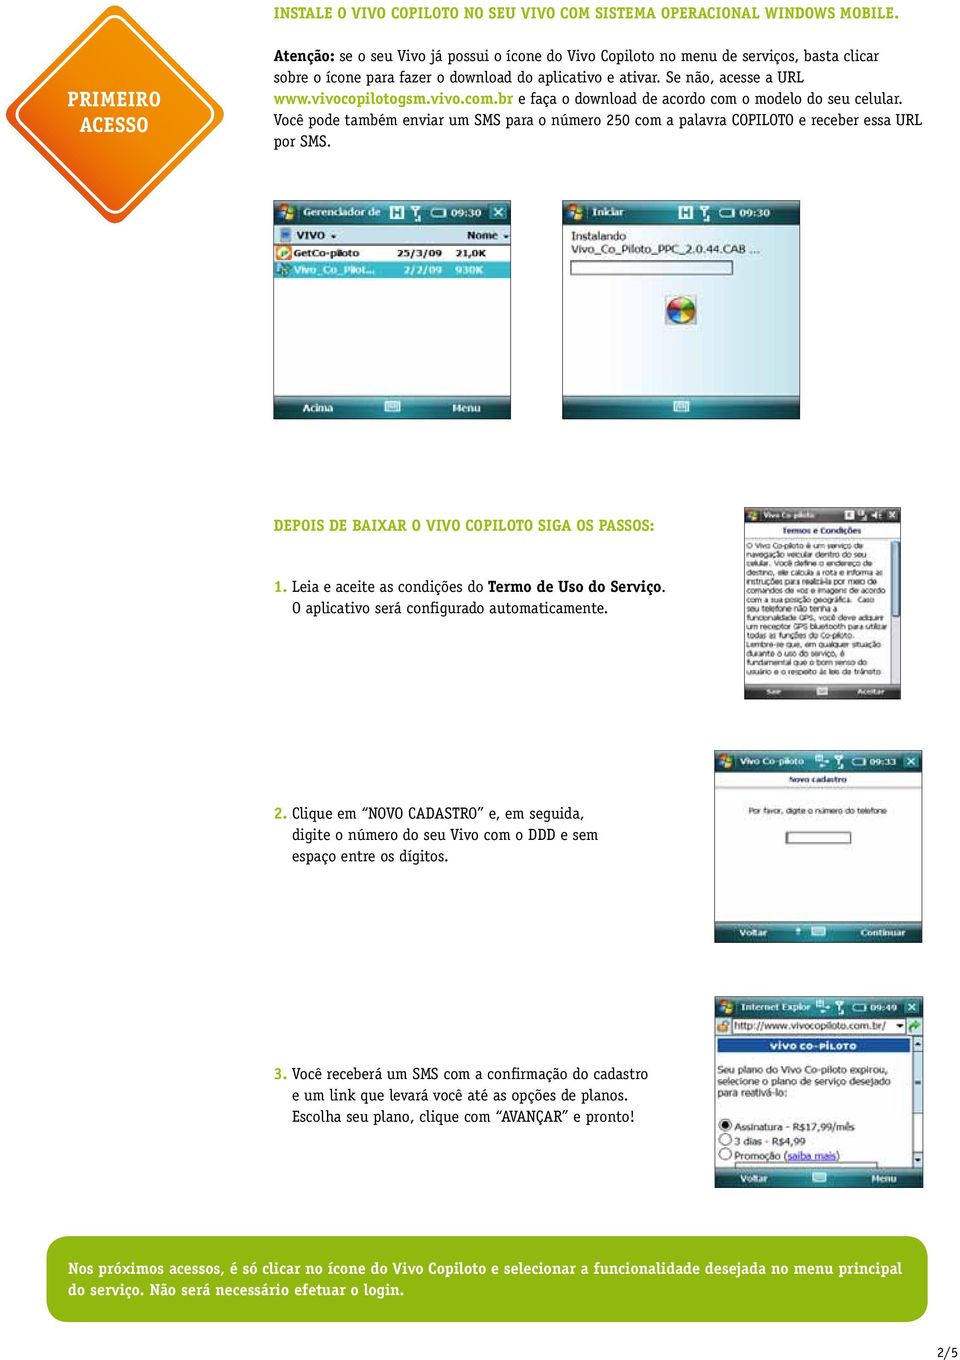 vivocopilotogsm.vivo.com.br e faça o download de acordo com o modelo do seu celular. Você pode também enviar um SMS para o número 250 com a palavra COPILOTO e receber essa URL por SMS.